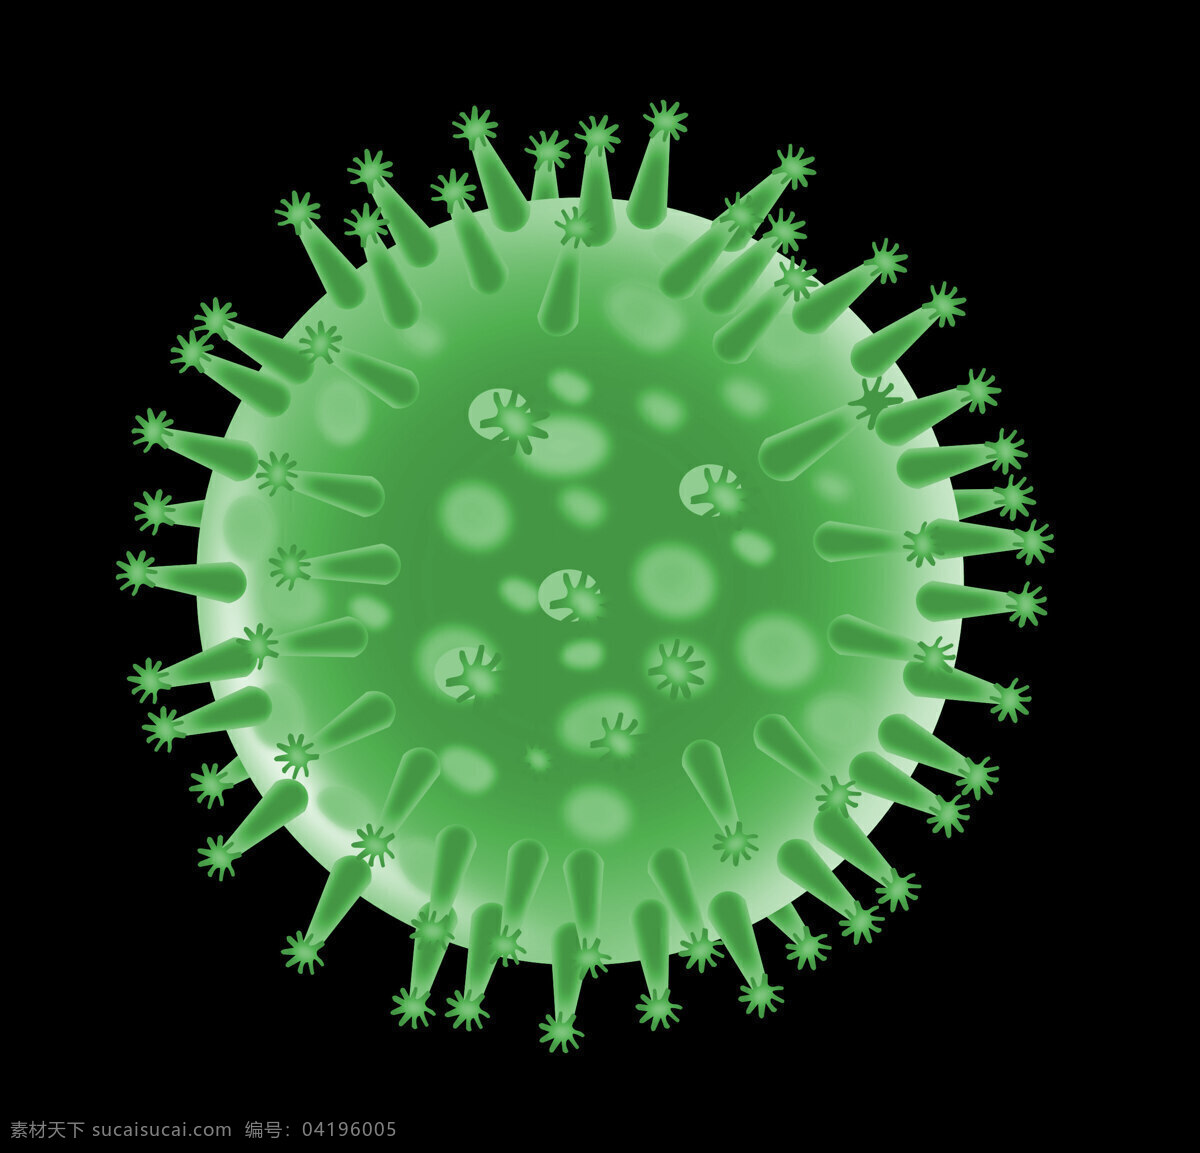 流感 病毒 结构 流感病毒结构